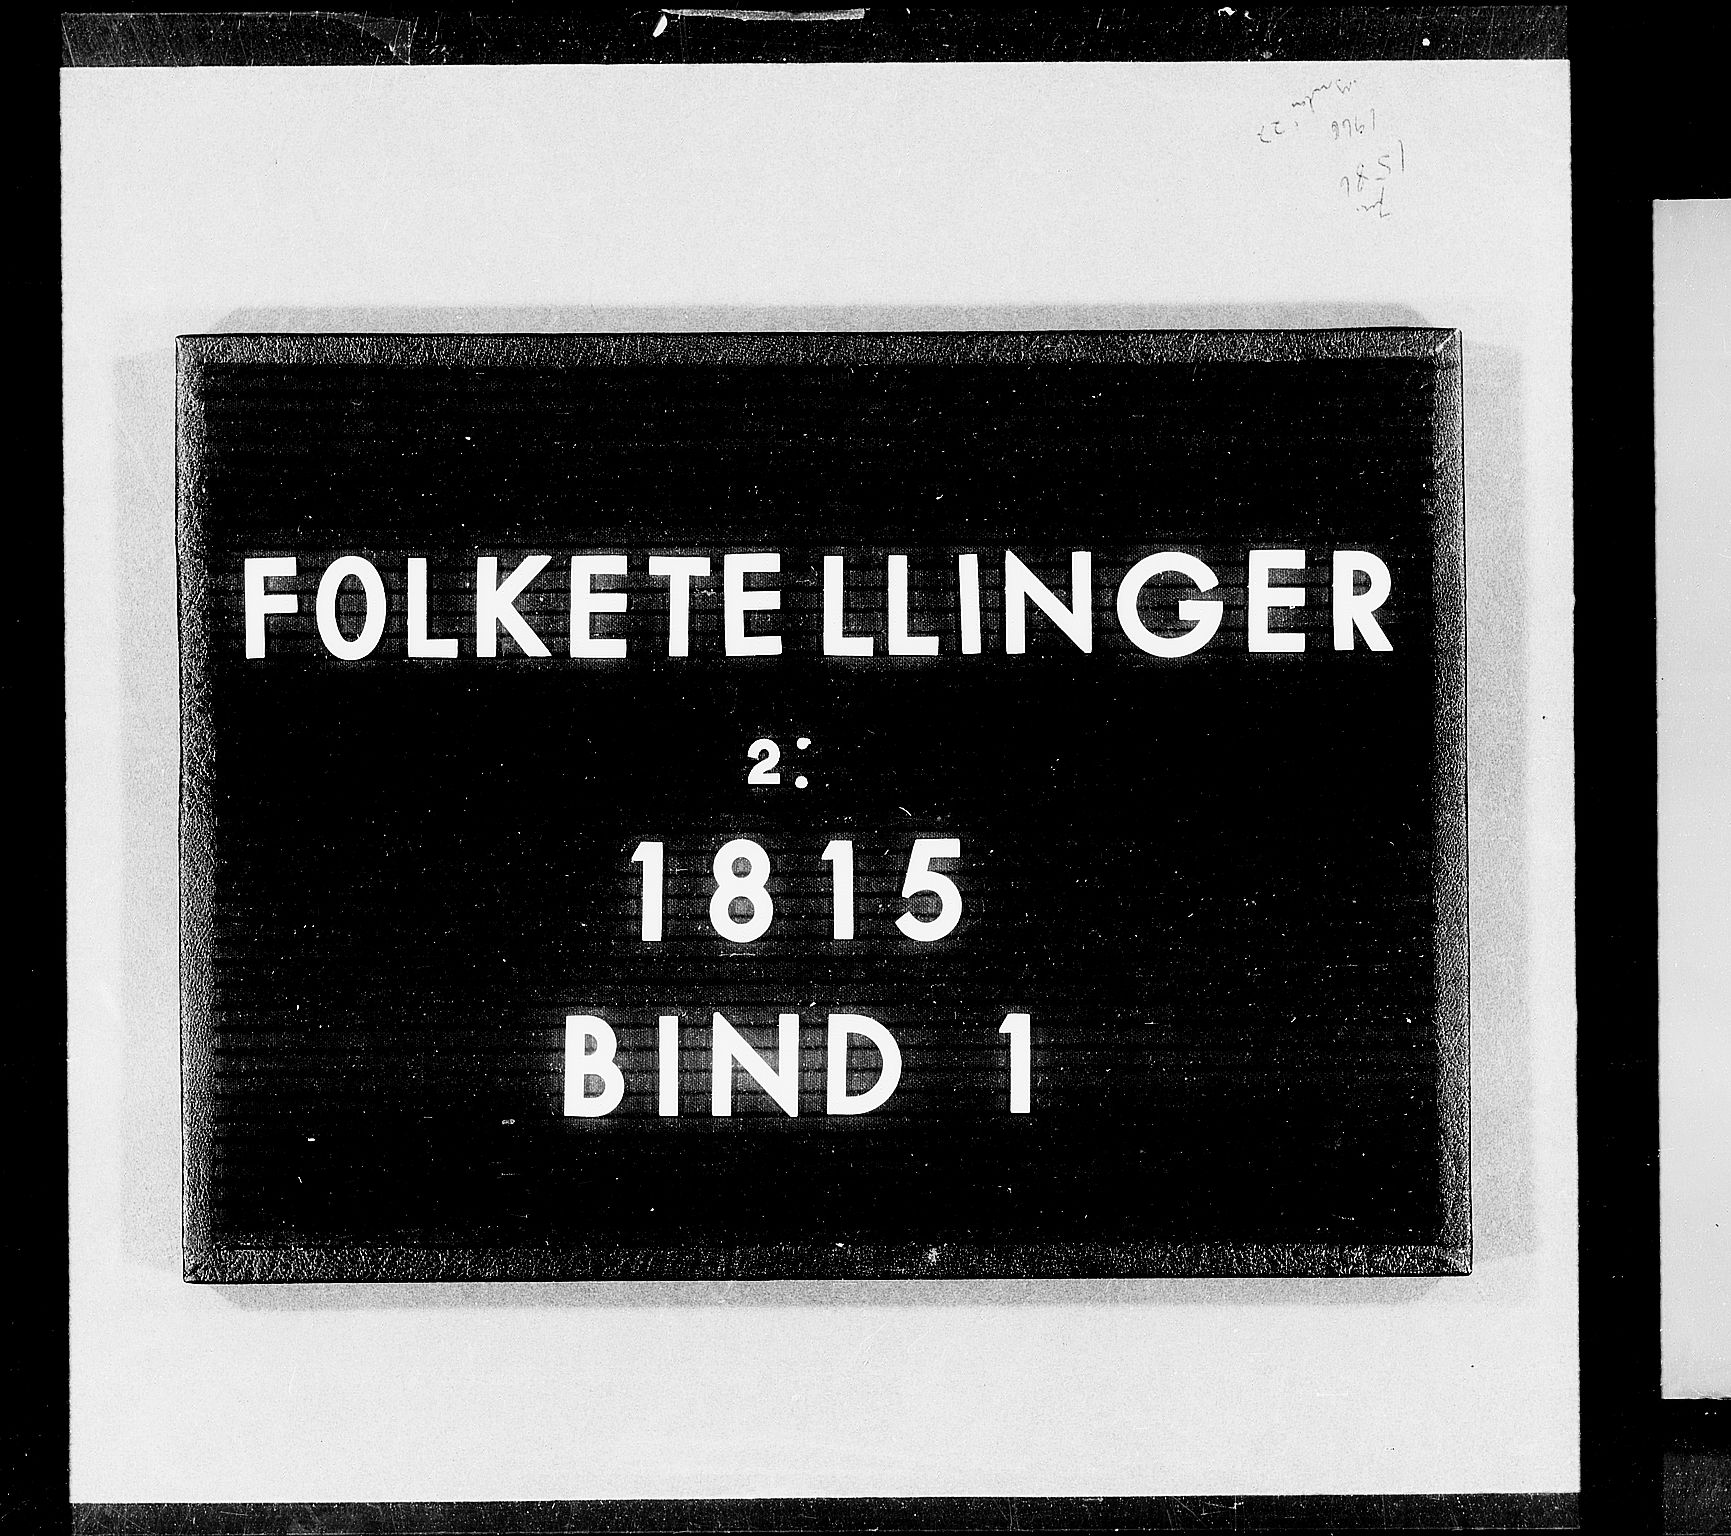 RA, Folketellingen 1815, bind 1: Akershus stift og Kristiansand stift, 1815, s. 1